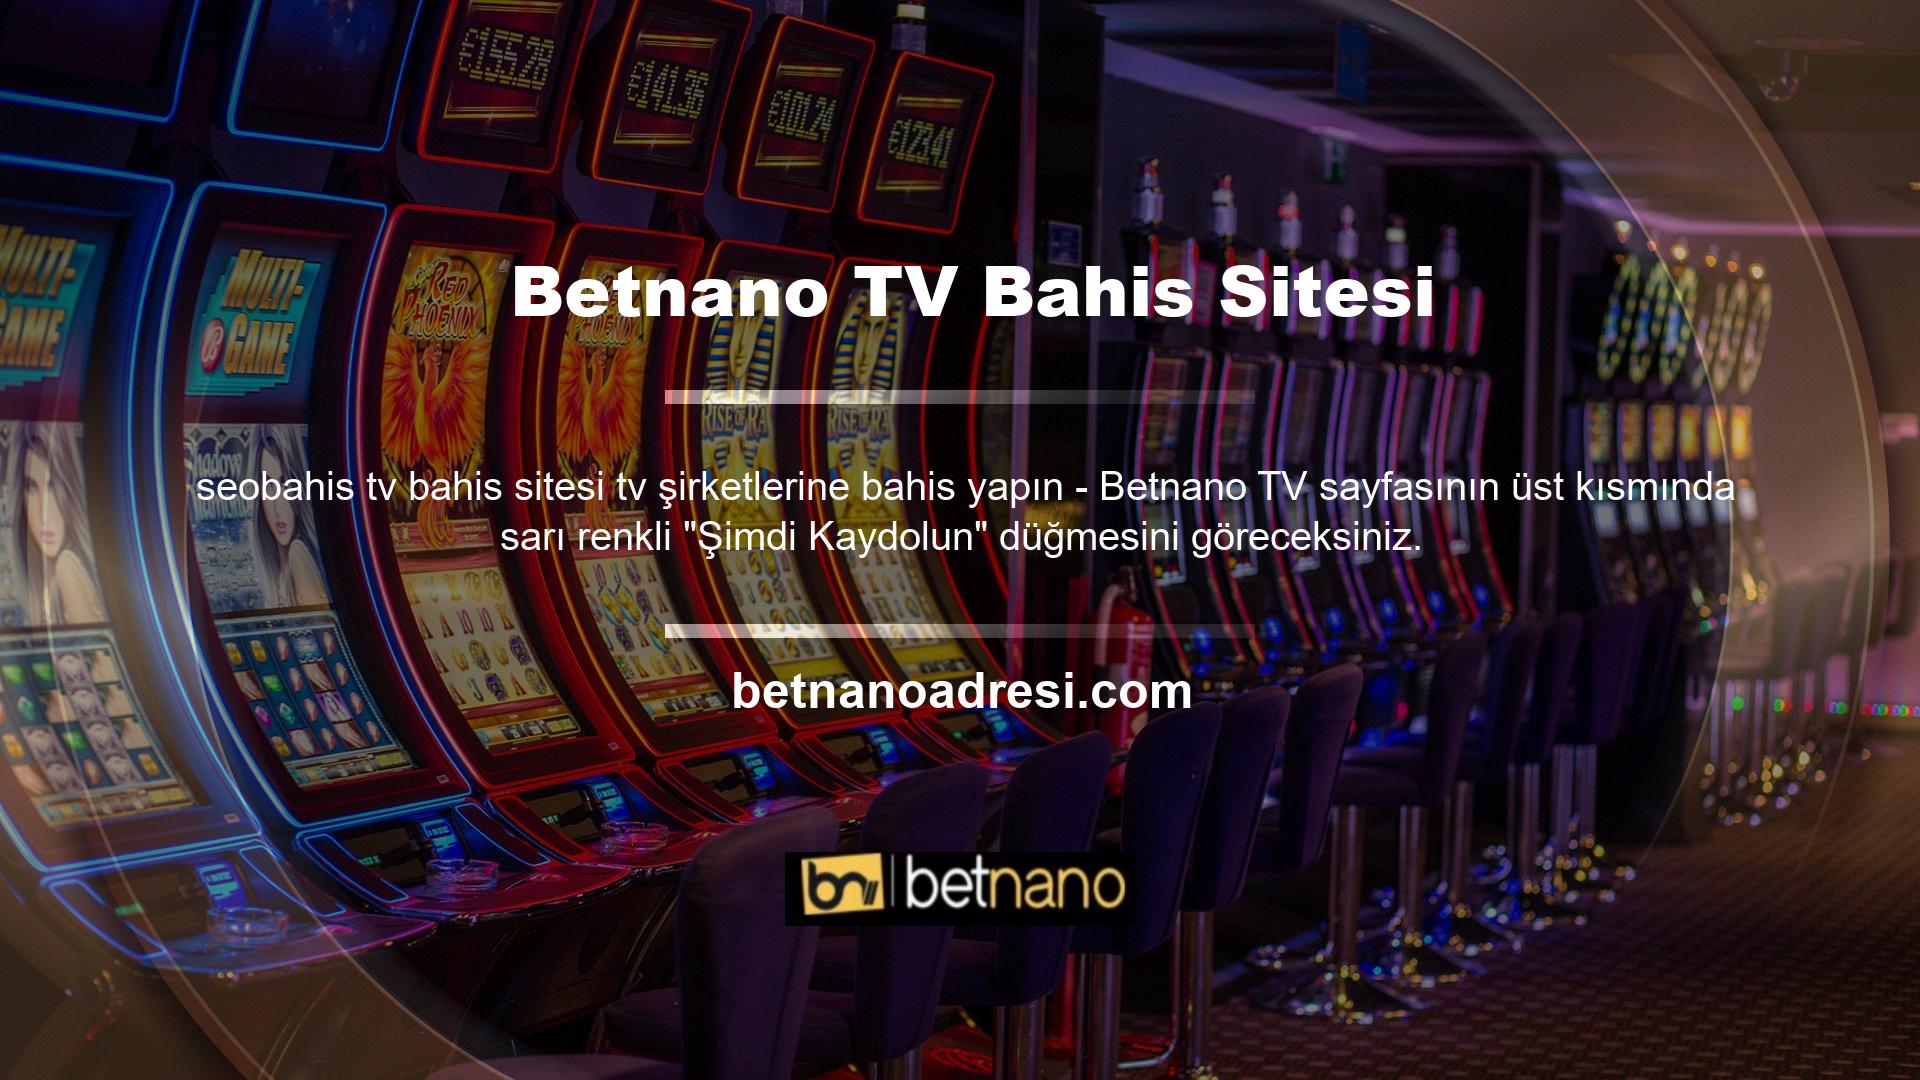 Betnano Canlı Casino OyunBahis Sitesi müşterilerine sunduğu hizmetler ile bahis siteleri sektörünün en saygınları arasında yer alan ve diğer sitelerden farklı olarak gönüllerde taht kurmuş sitelerden biridir